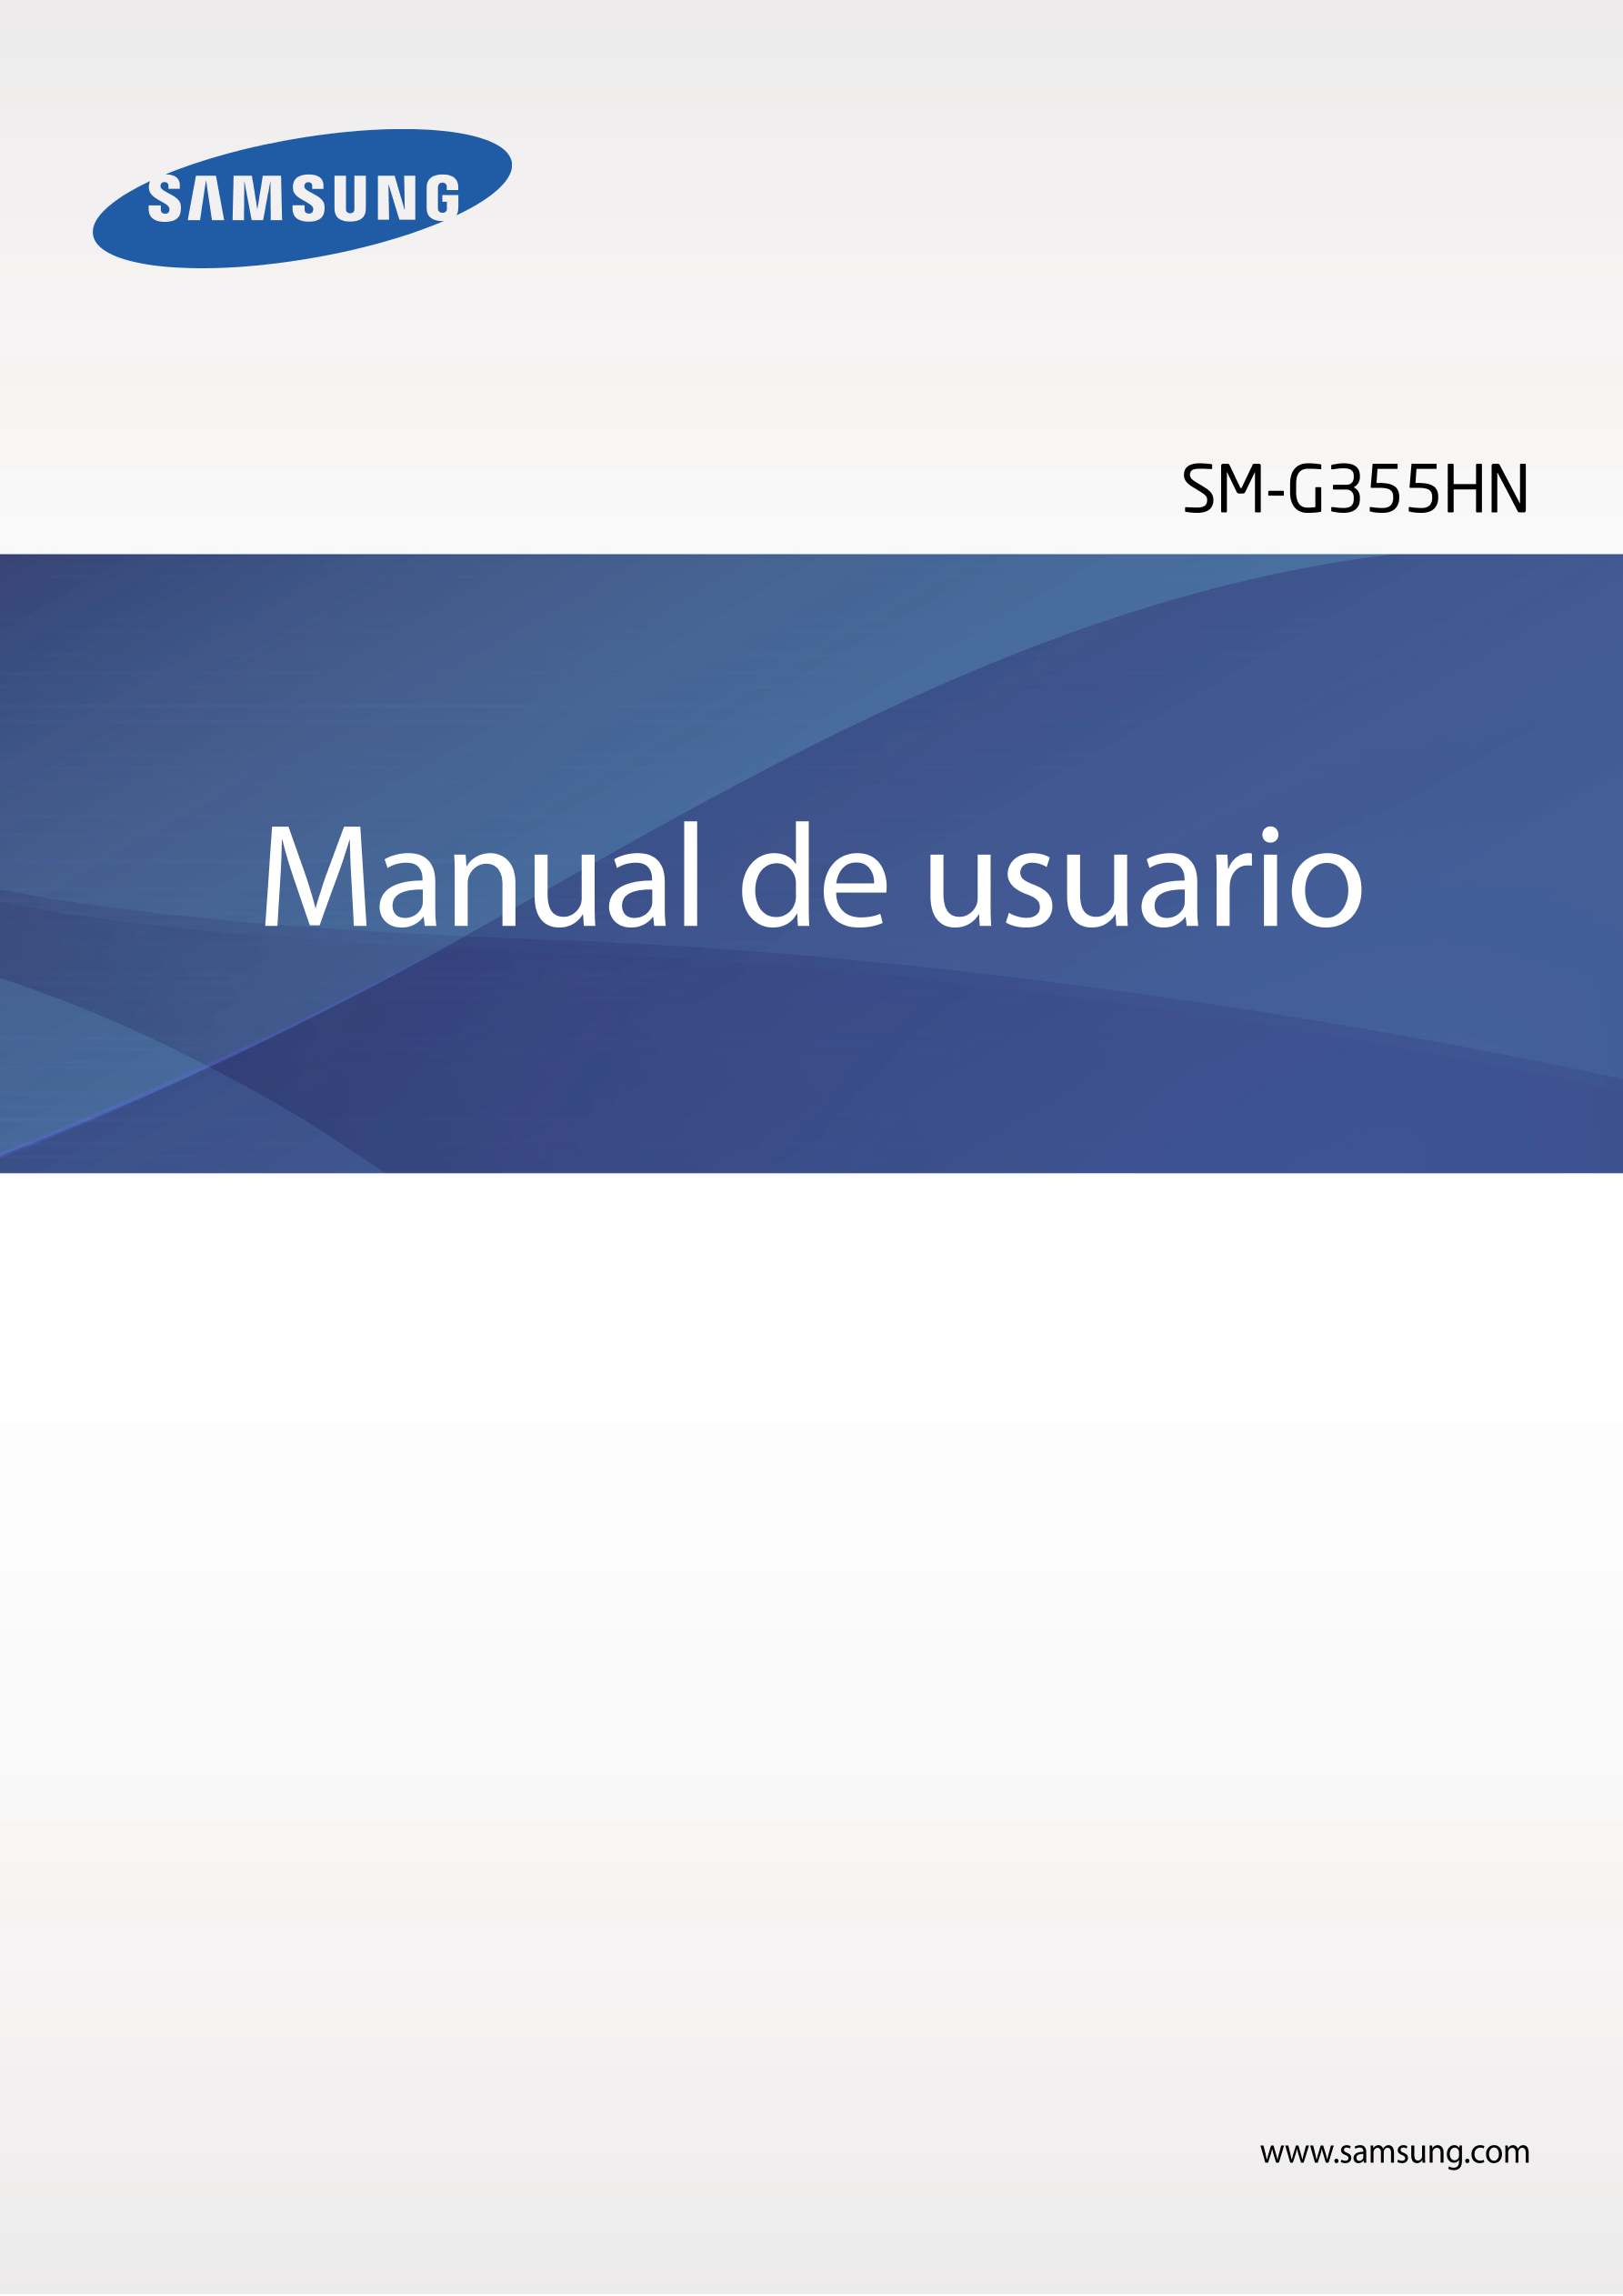 SM-G355HN
Manual de usuario
www.samsung.com